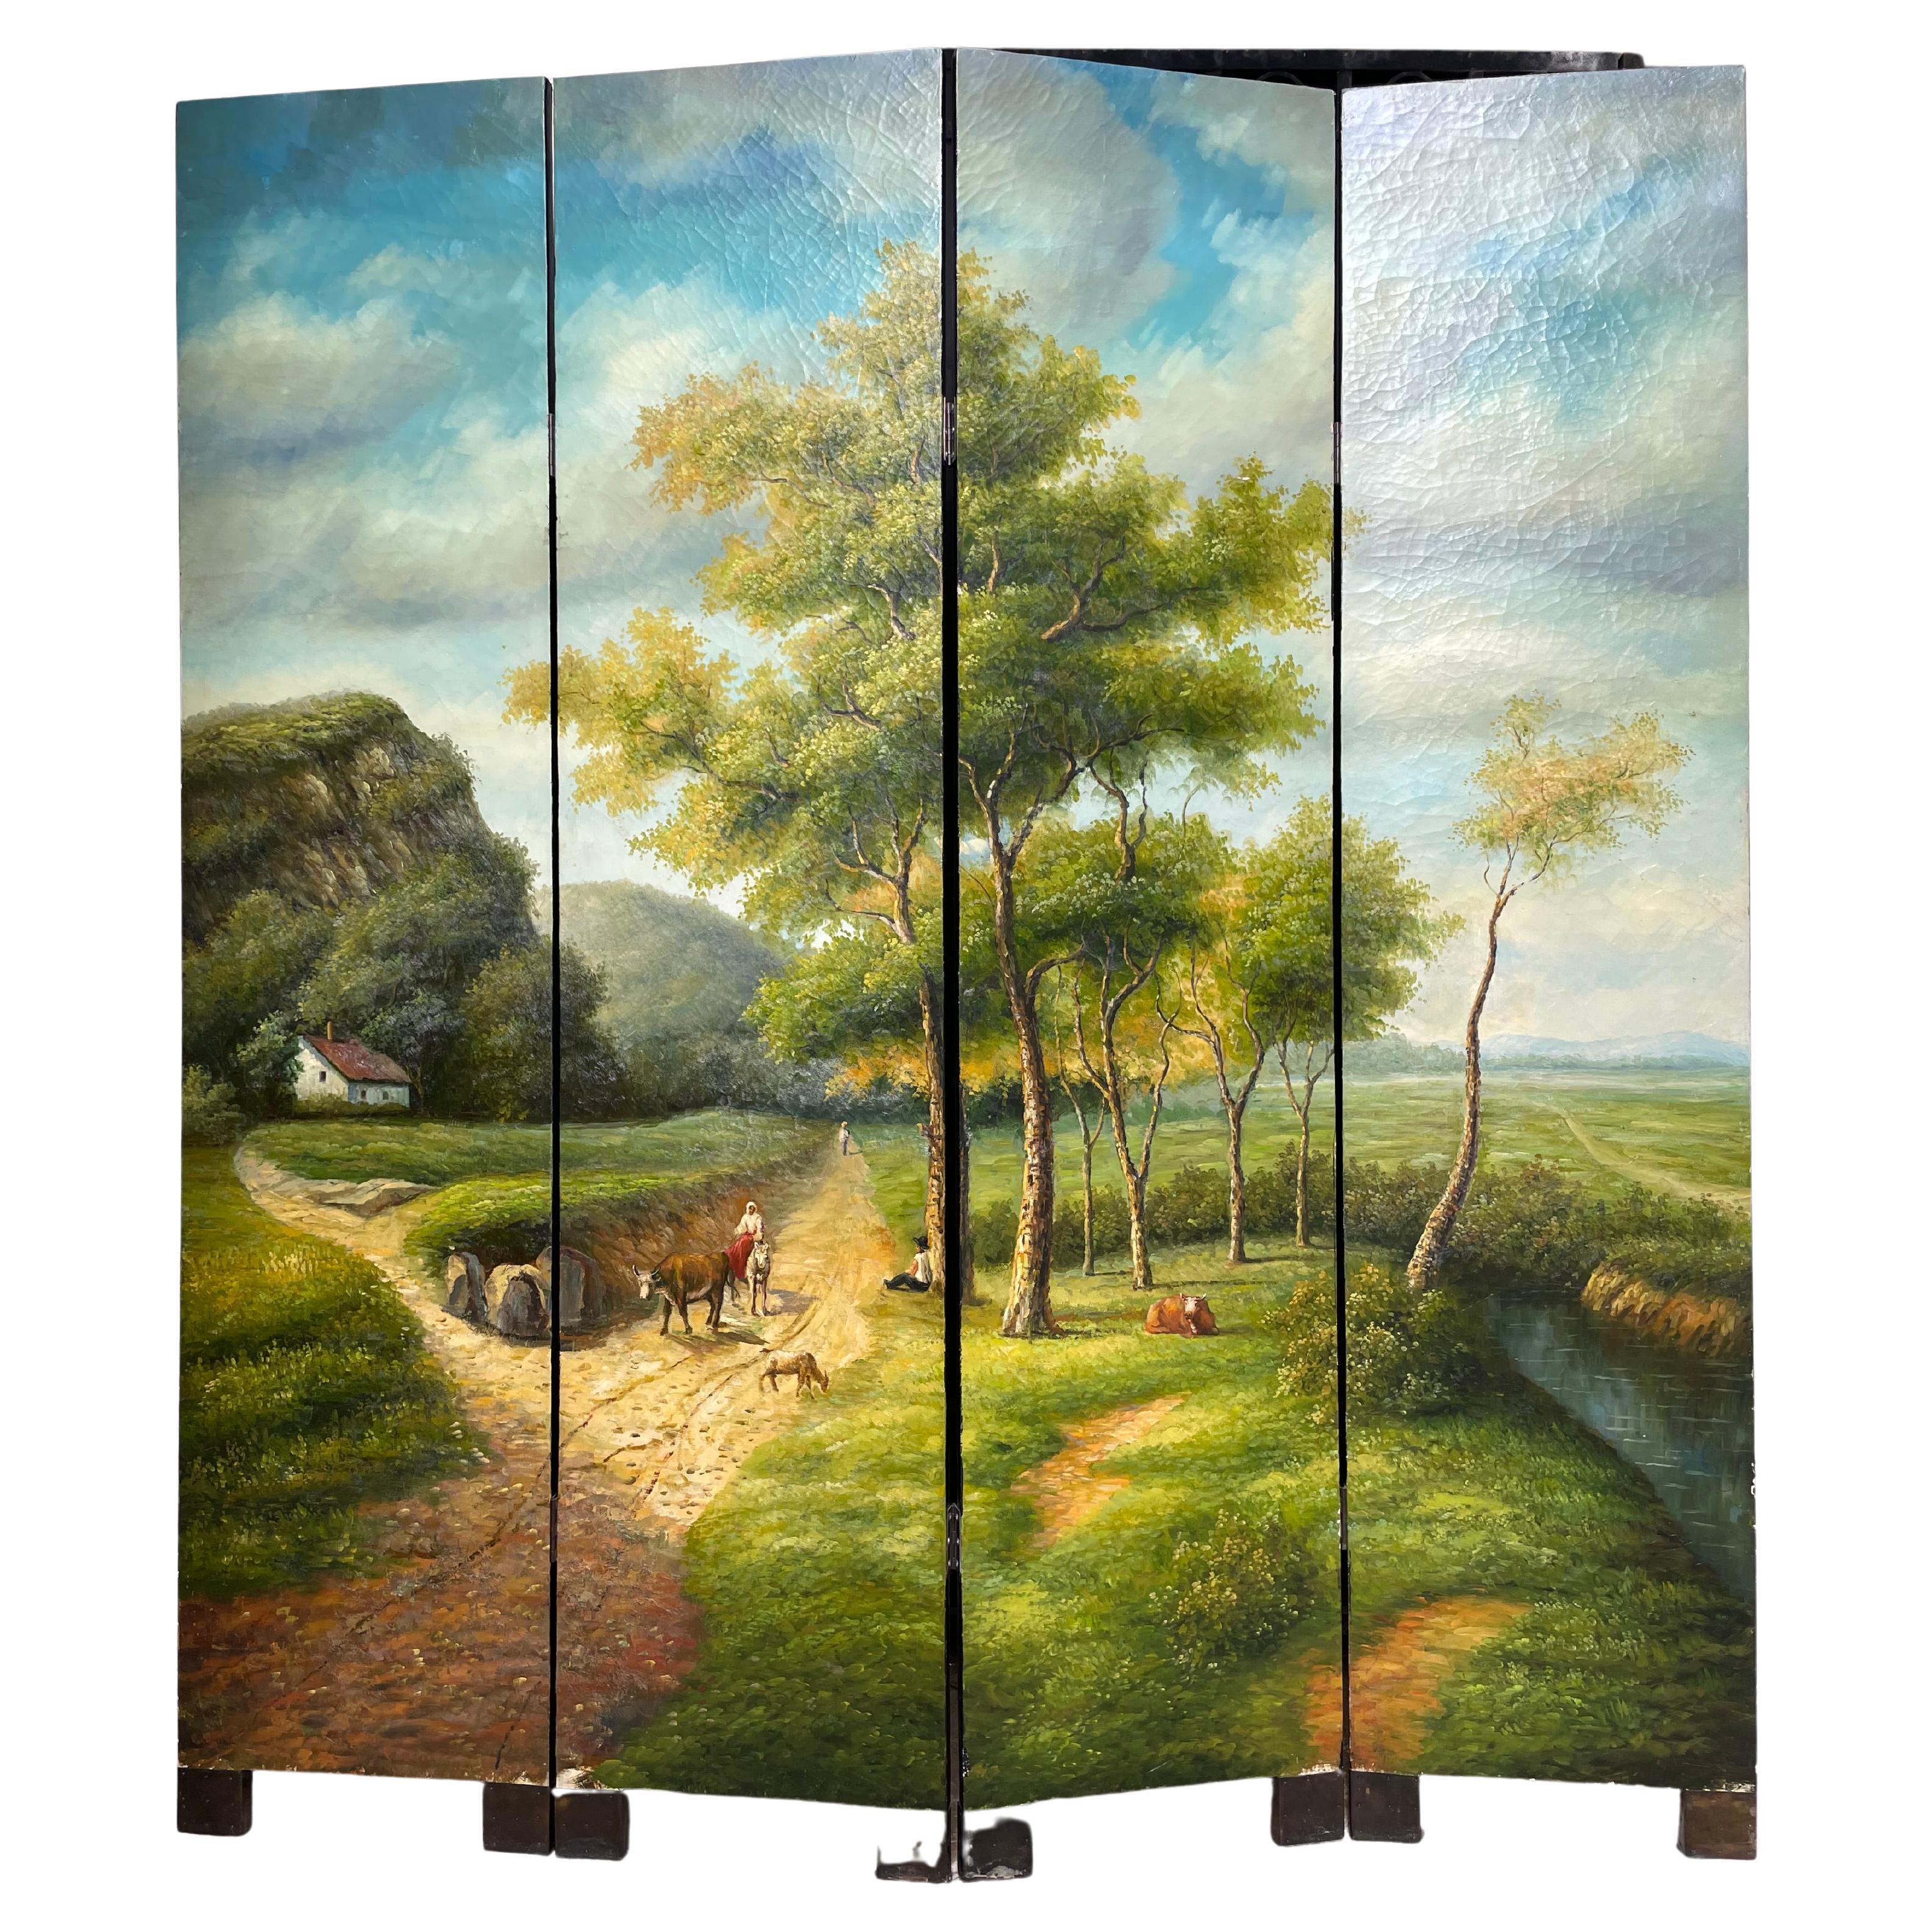 Vierblättriger Holzschirm. Das Öl auf Leinwand stellt eine französische Landschaftsszene aus dem 19. Jahrhundert dar. Ein wunderschöner wolkenblauer Himmel und eine grüne Landschaft, ein traditionelles Haus, Tiere und ein Bauer sind die fein